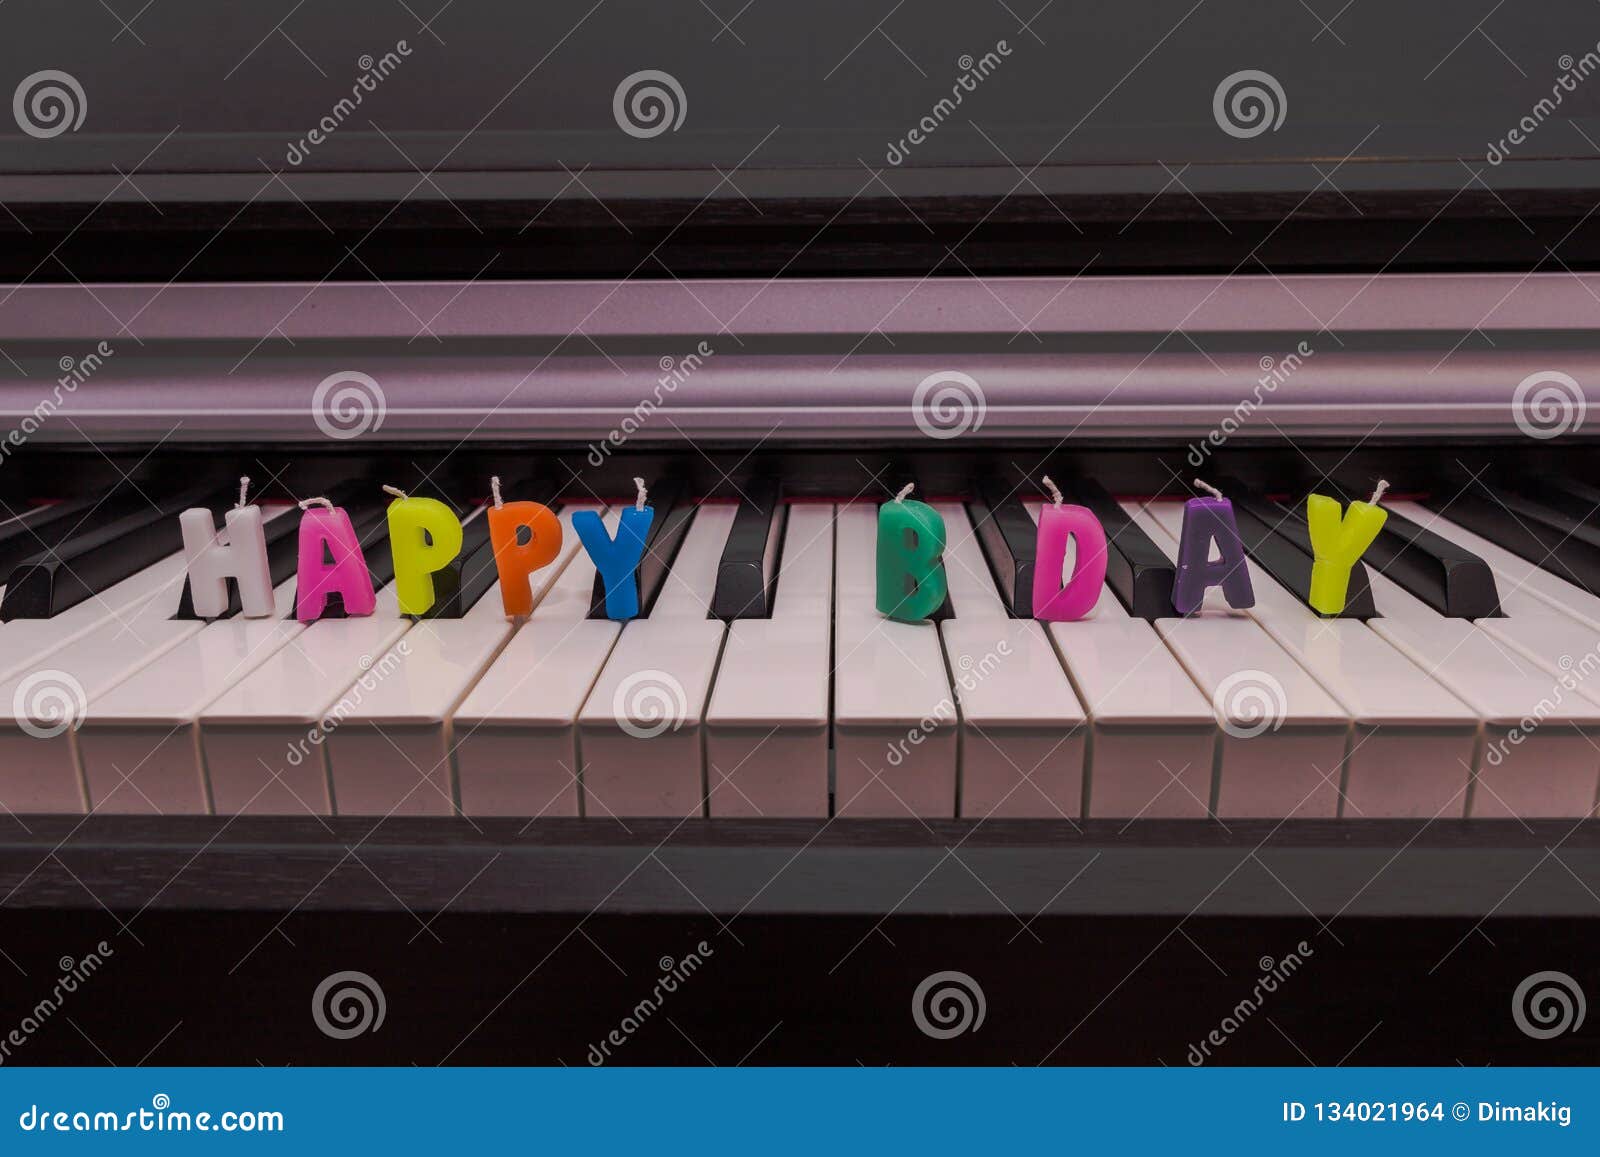 Happy birthday piano stock photos